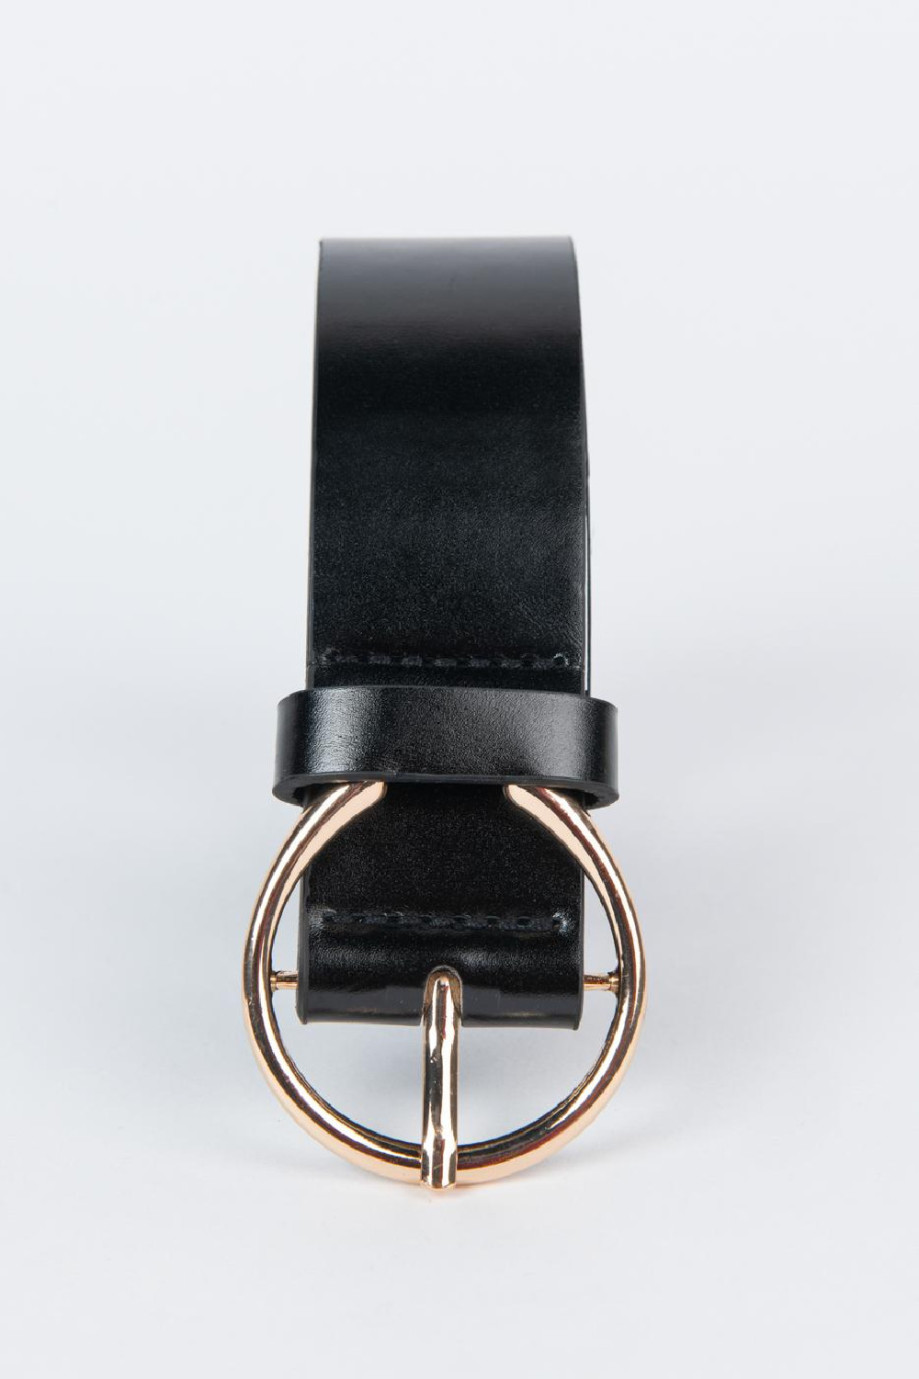 Cinturón sintético negro con hebilla dorada circular metálica